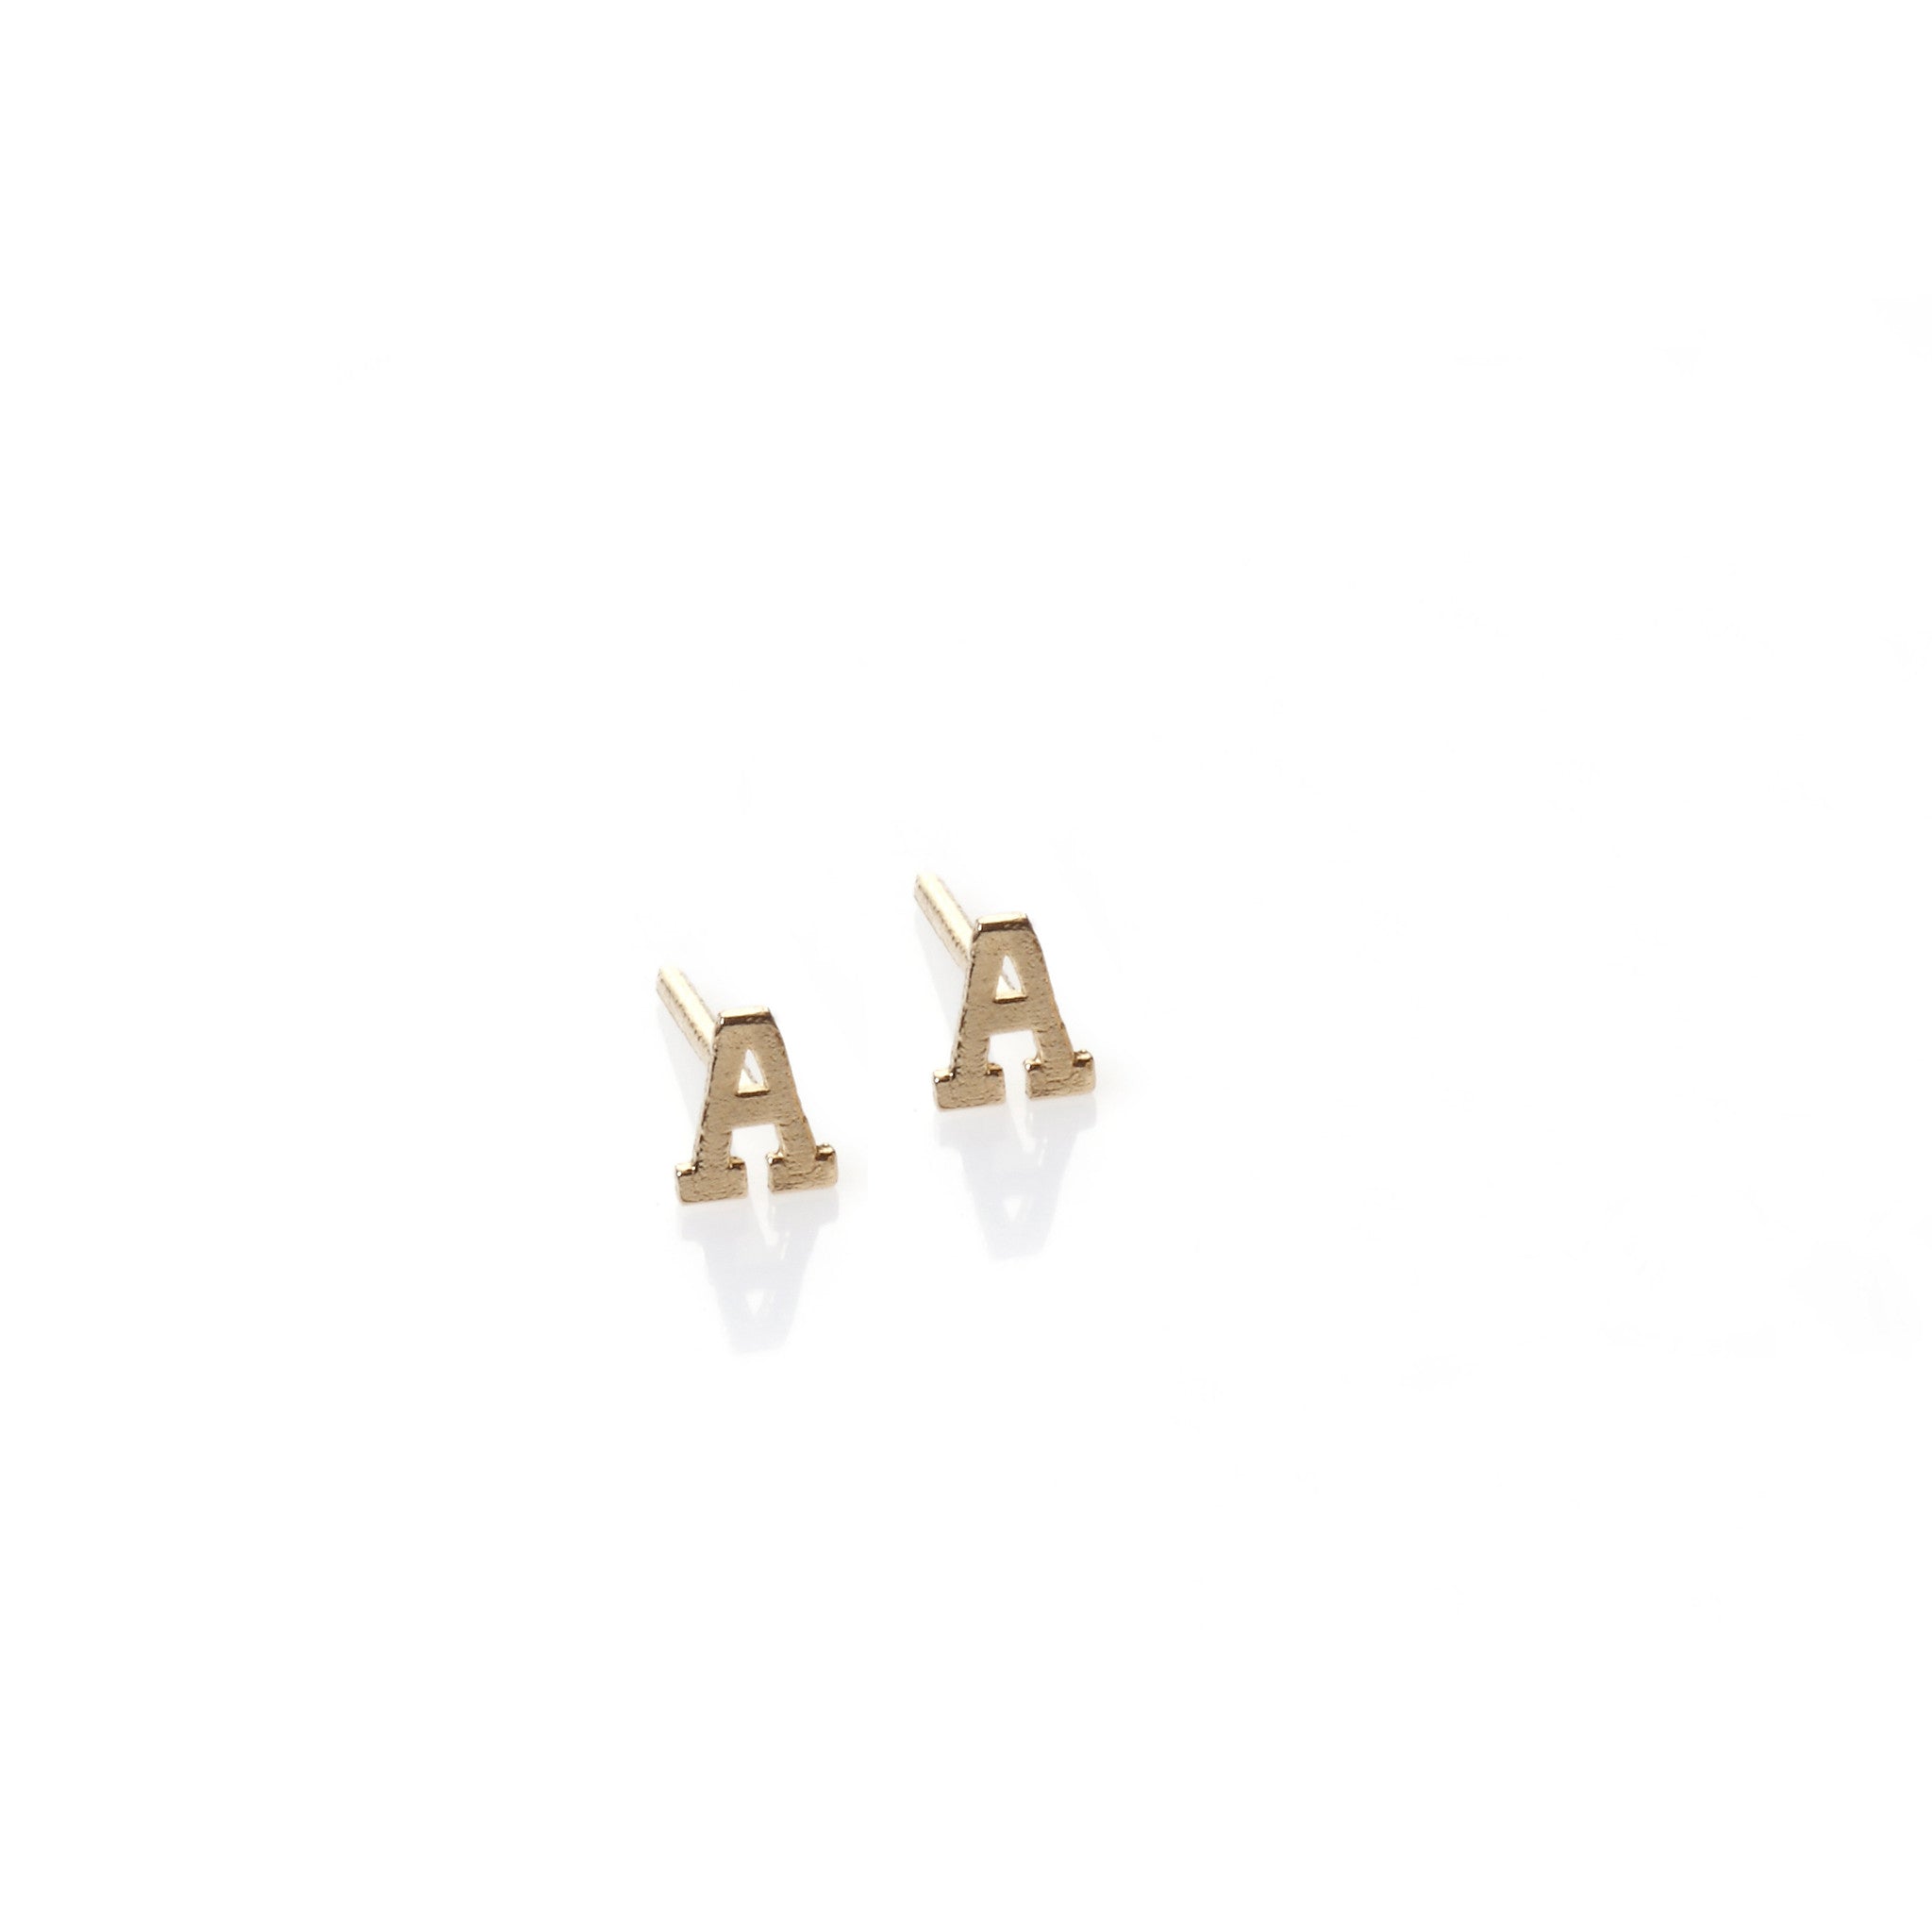 A - 14k gold studs earrings